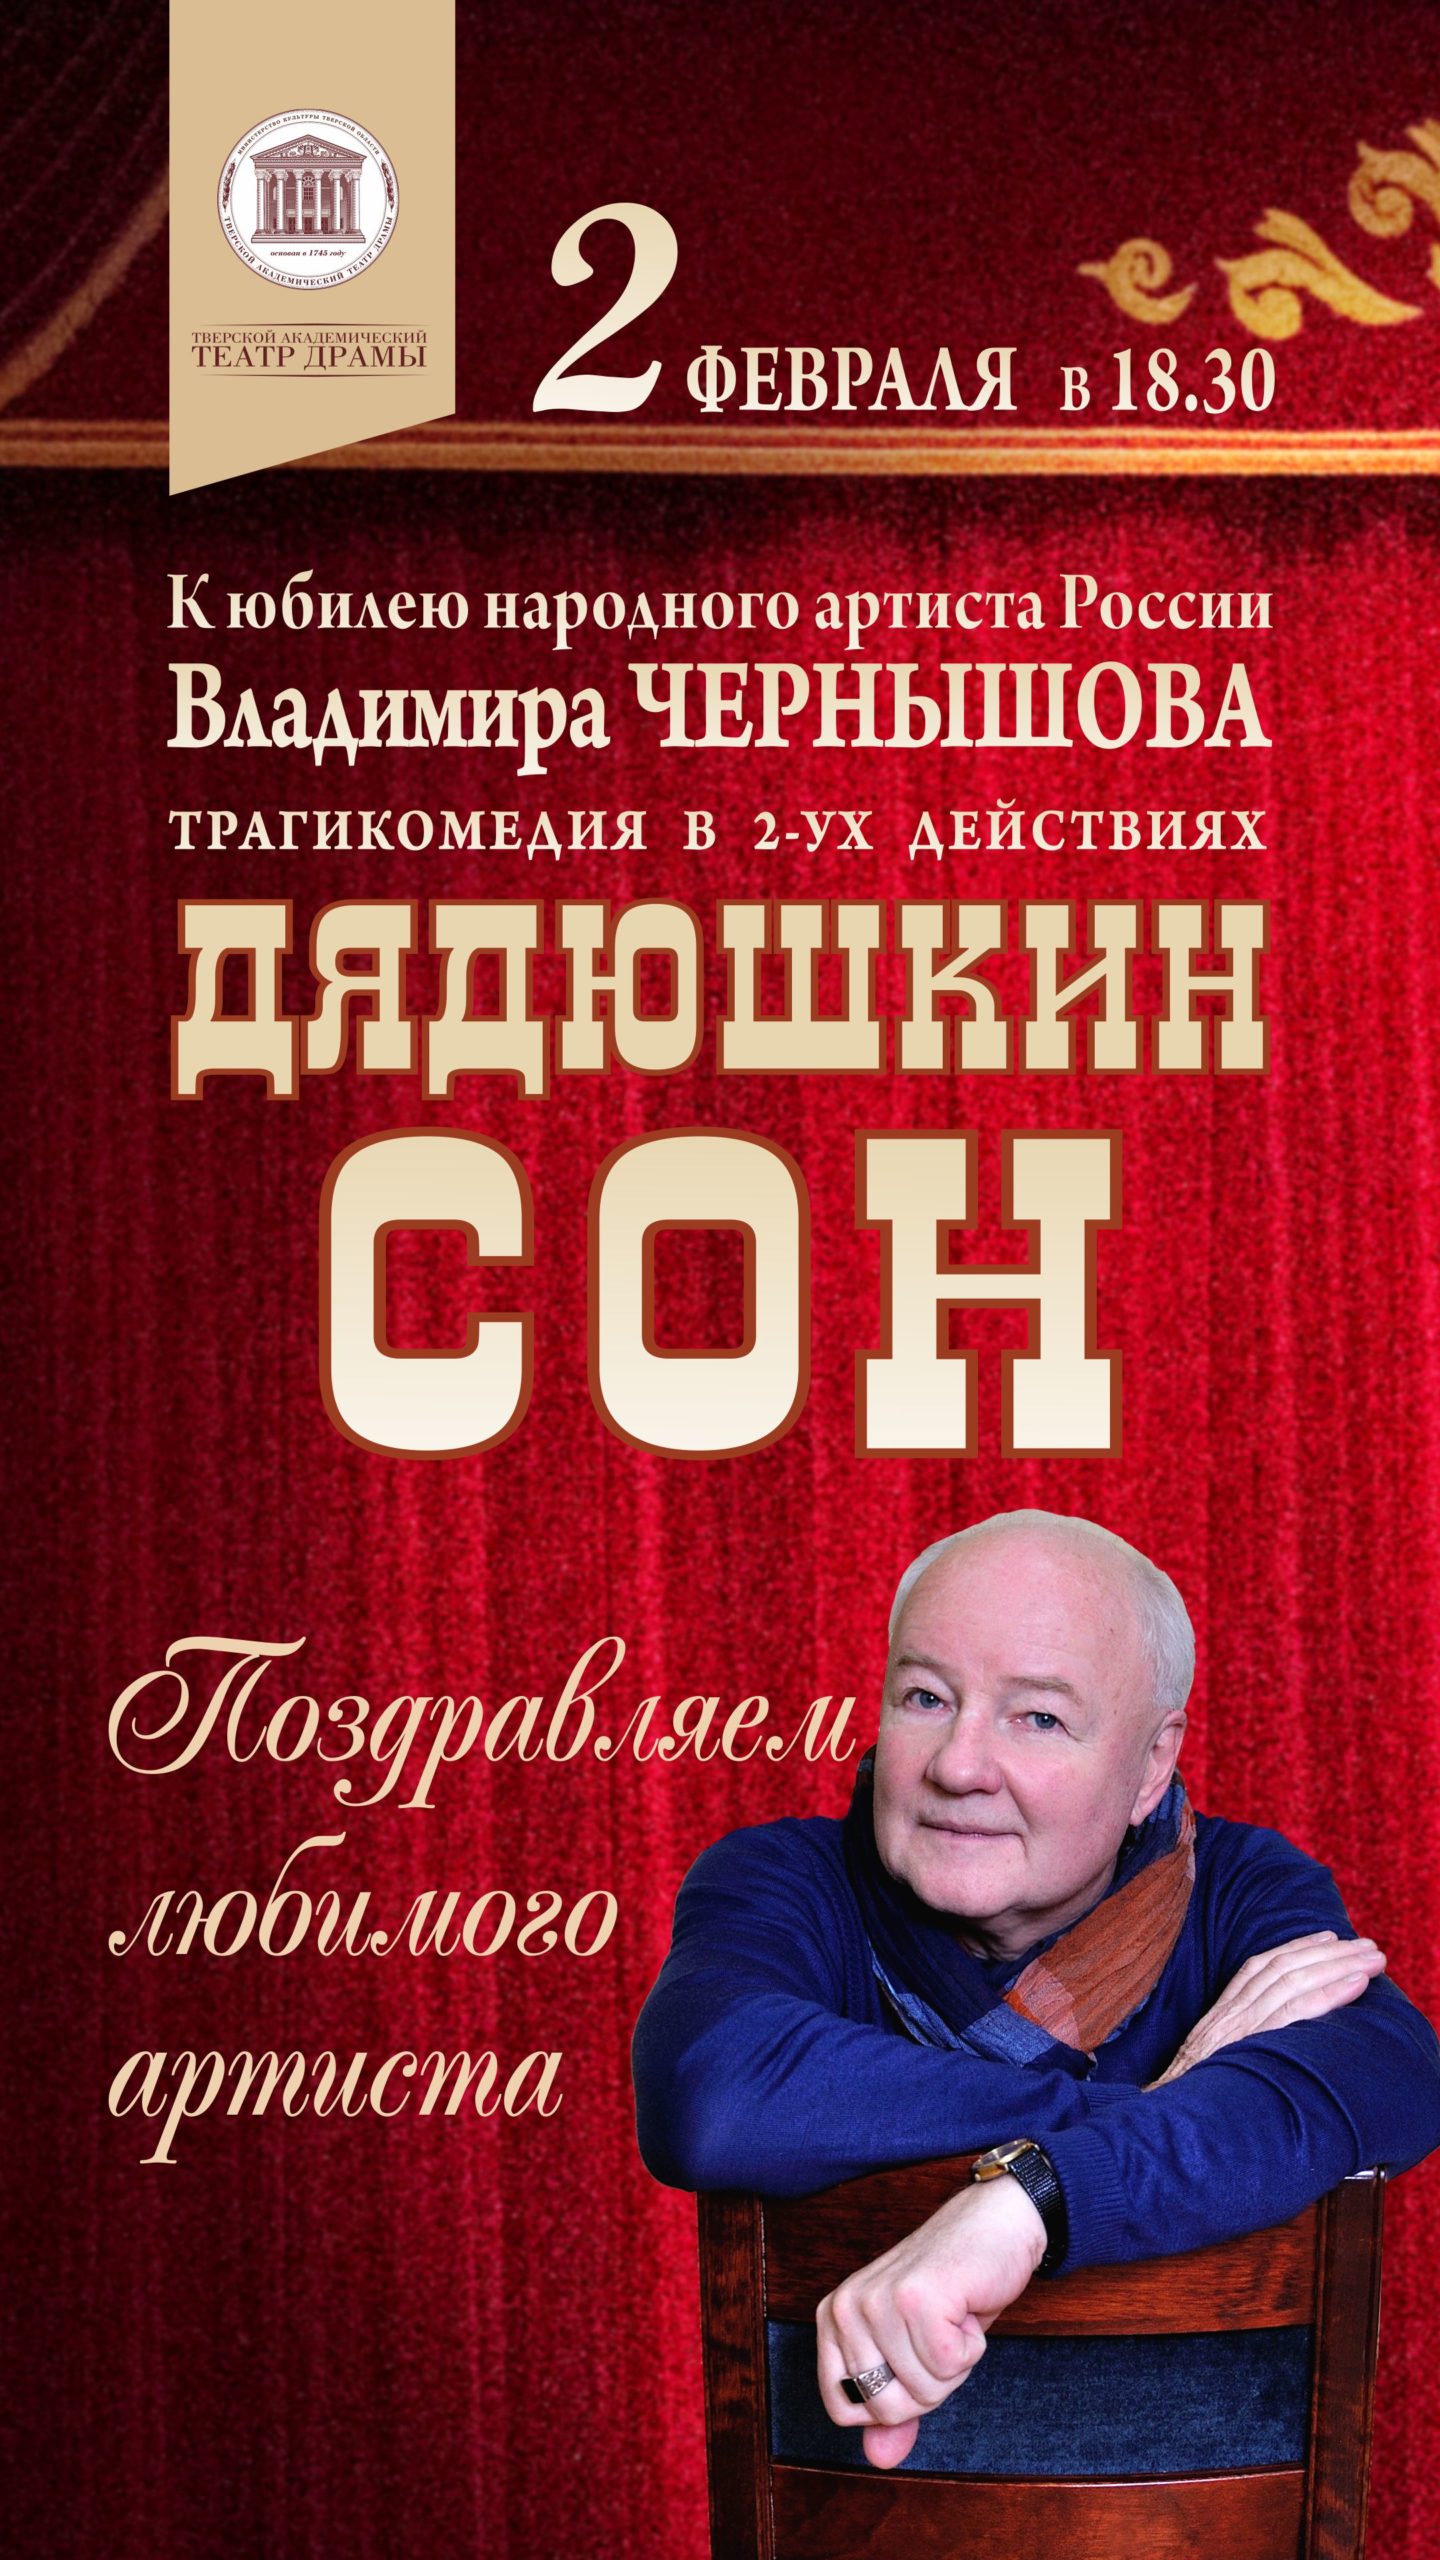 Актер Владимир Чернышов приглашает на юбилей и «Дядюшкин сон»